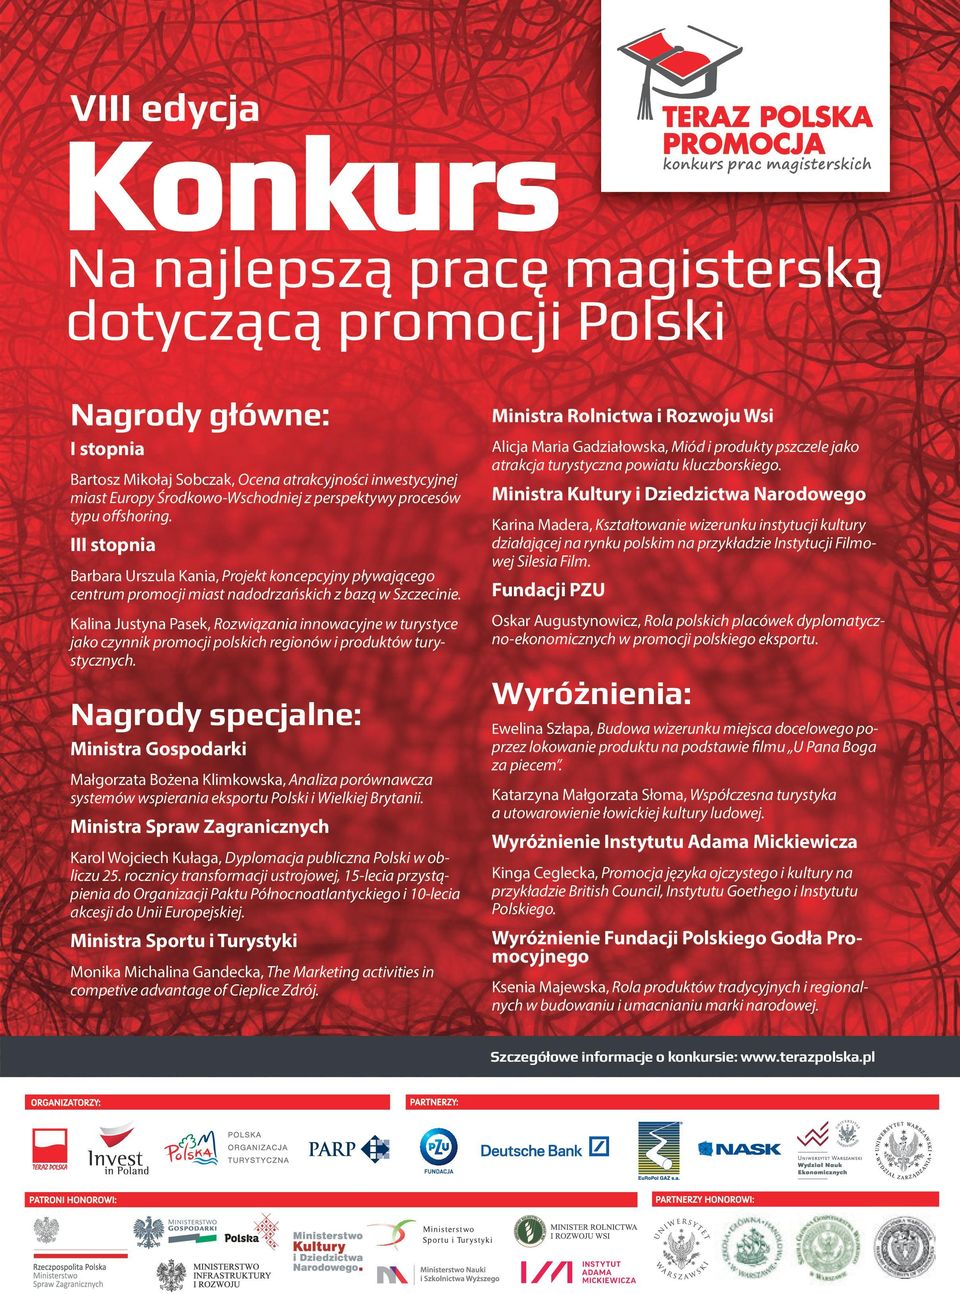 Kalina Justyna Pasek, Rozwiązania innowacyjne w turystyce jako czynnik promocji polskich regionów i produktów turystycznych.